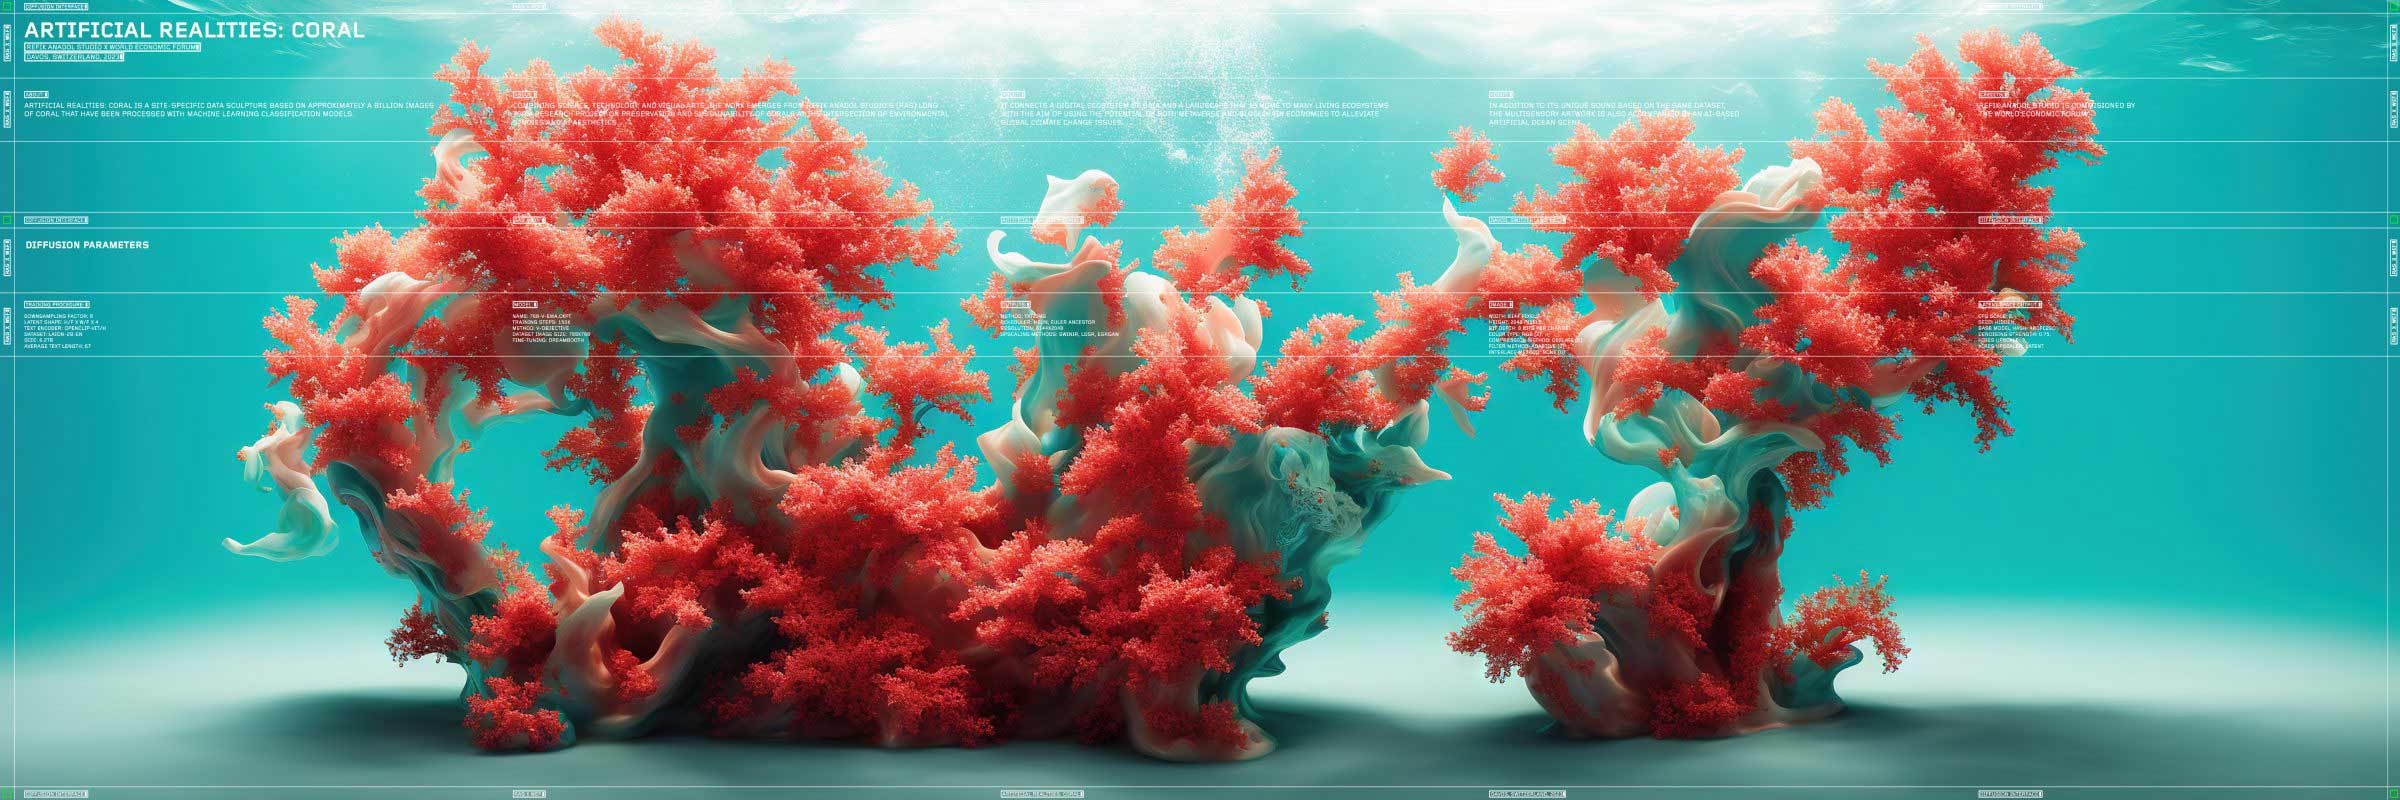 Mesterséges valóság: korall (forrás: Refik Anadol weboldala) 